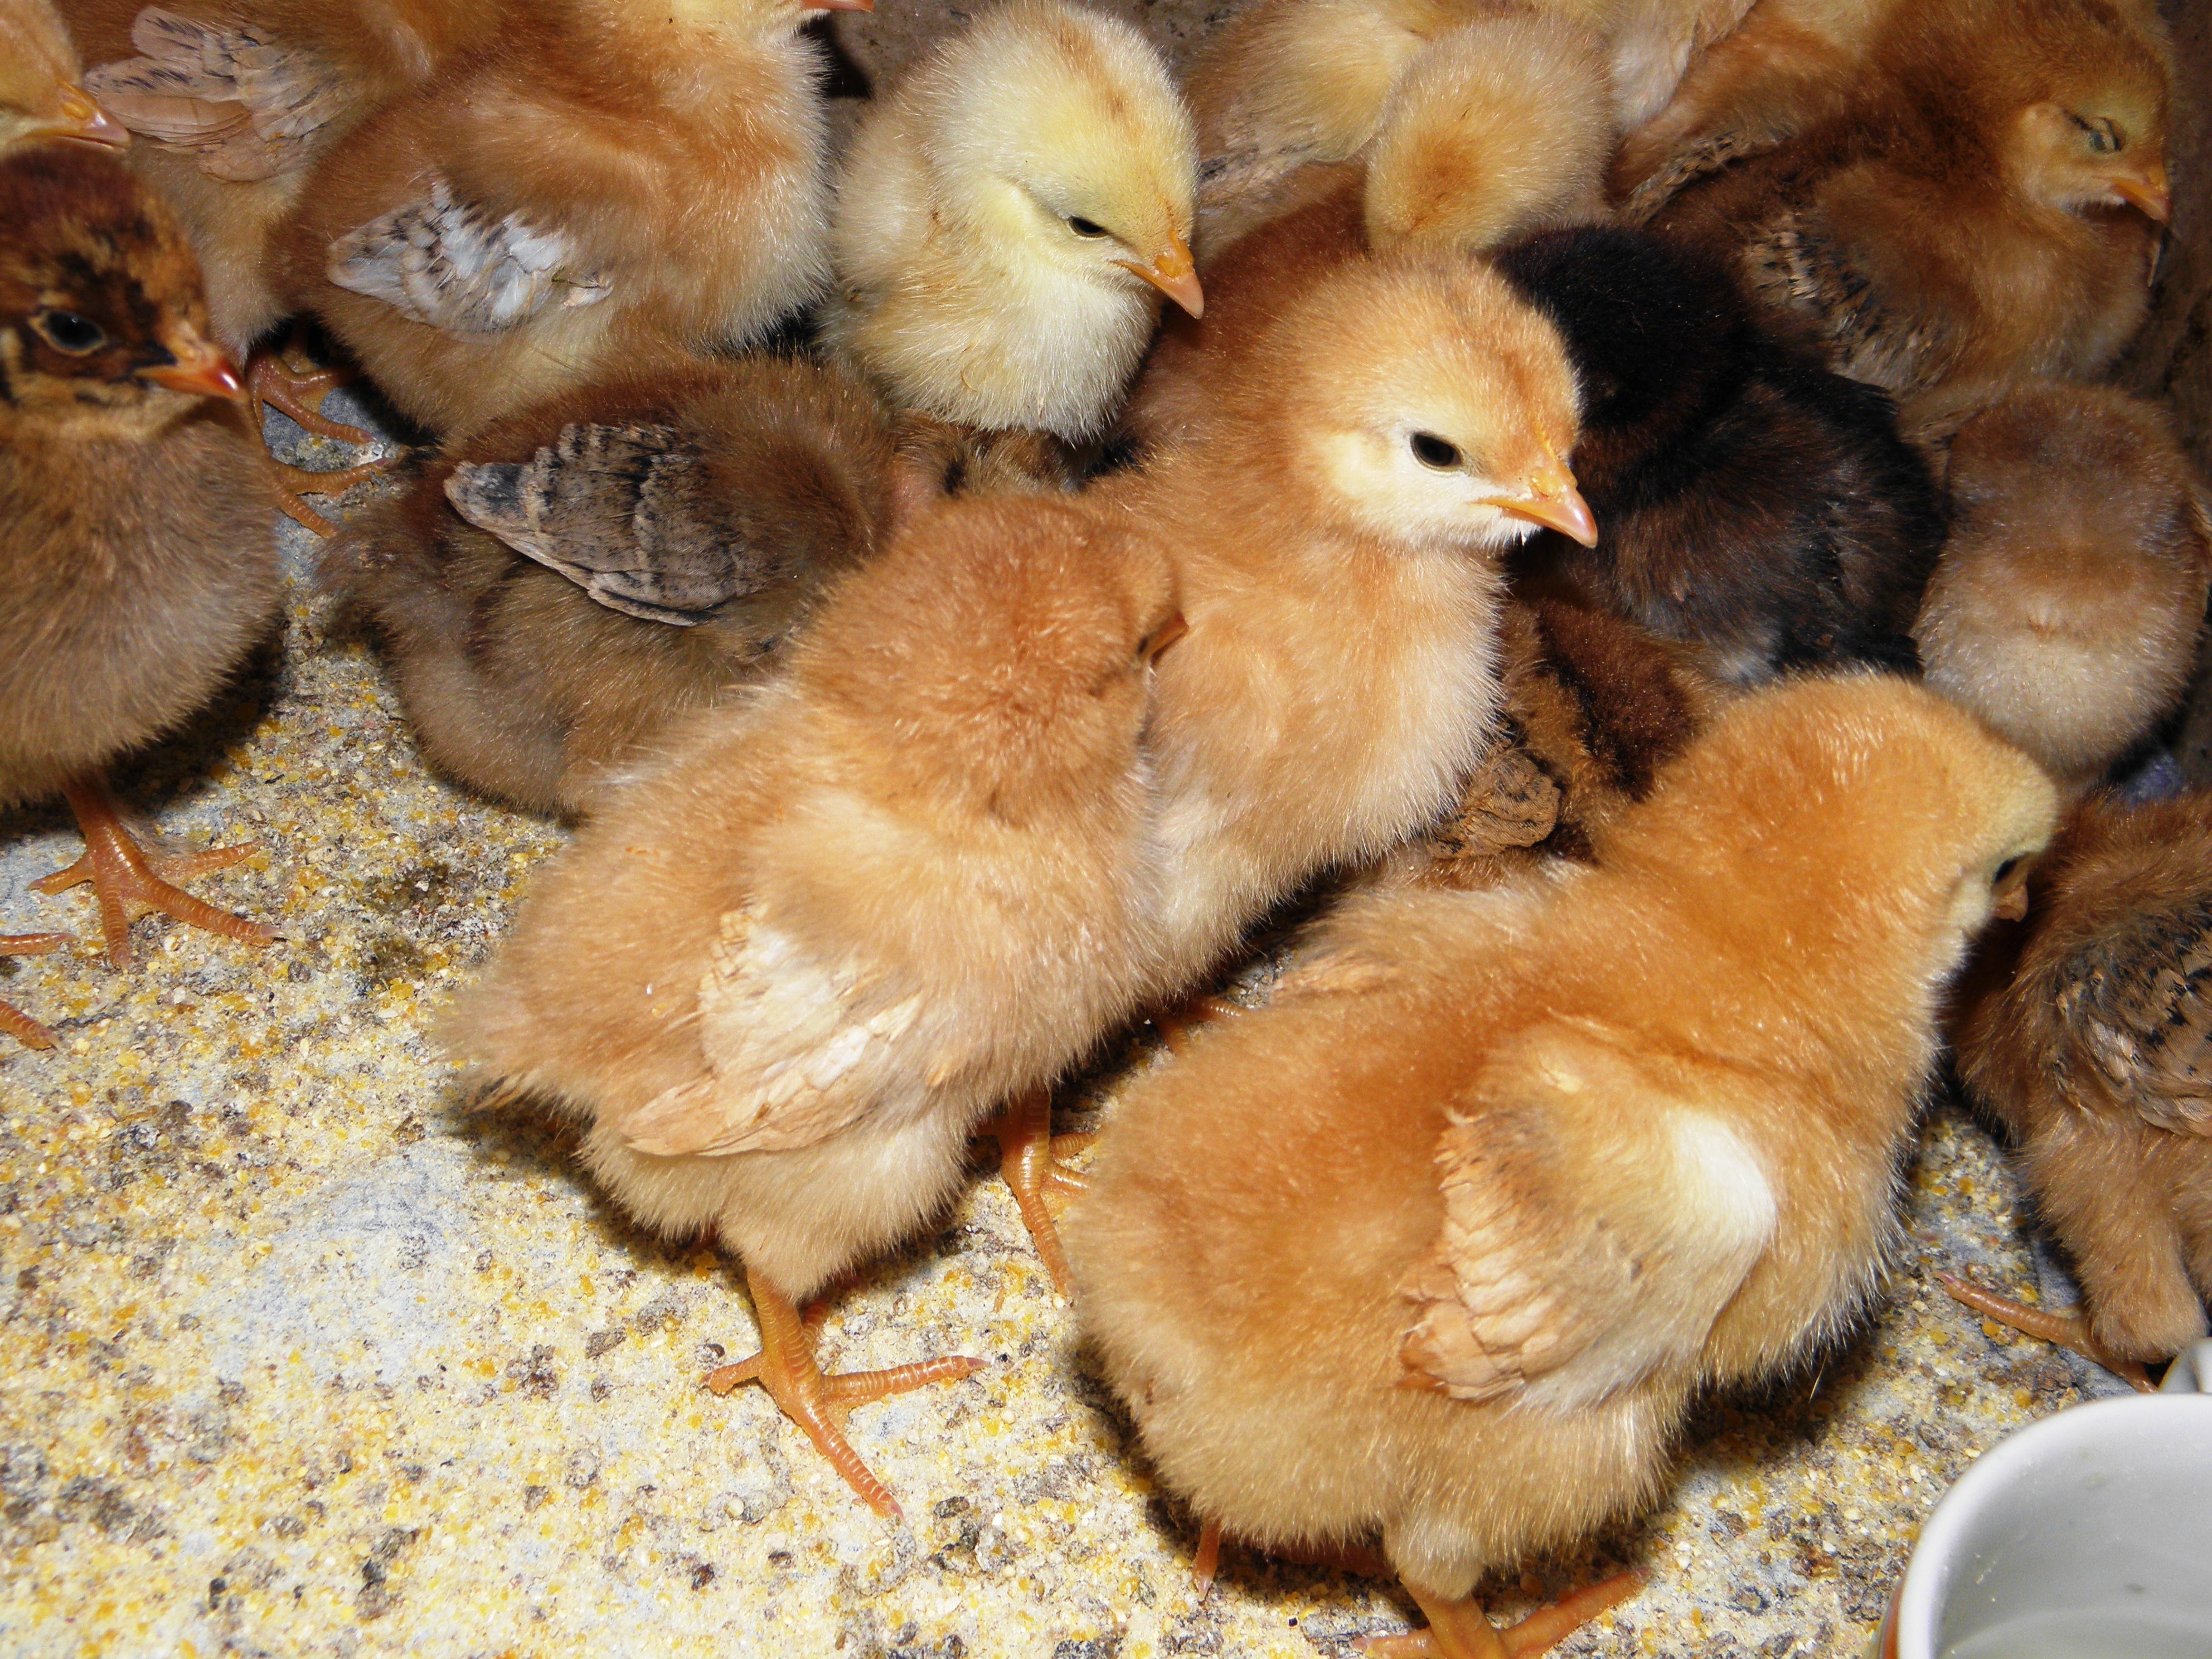 Купить цыплят в саратовской области